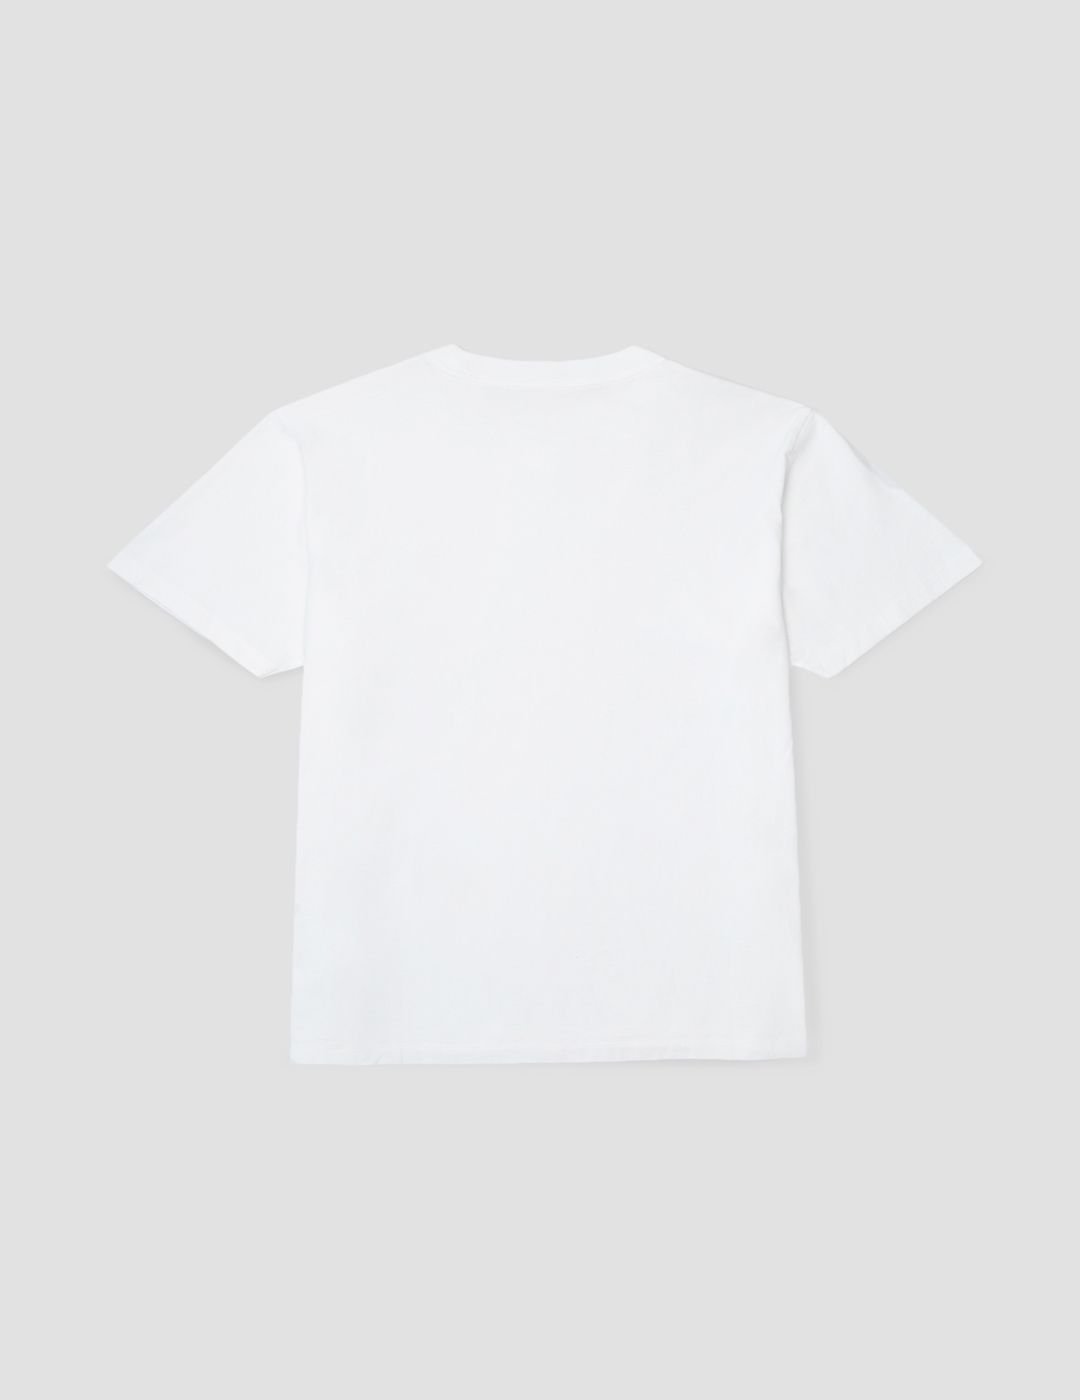 Camiseta Pompeii Hombre White Logo Tee